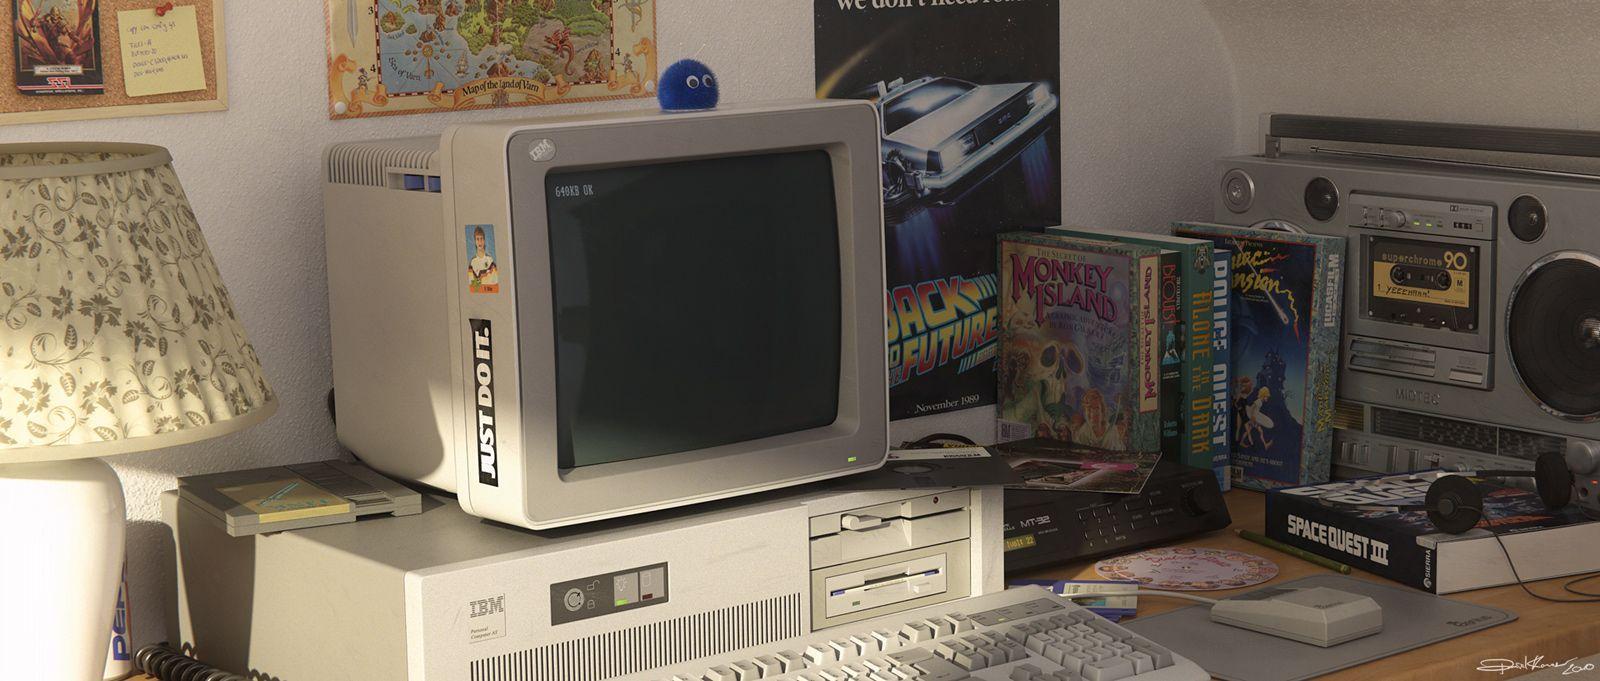 Nền desktop PC cũ: Nostalgia một thứ để mãi mãi in sâu vào trái tim. Những hình ảnh liên quan sẽ đưa bạn trở lại tuổi thơ với các hình nền PC cũ không còn được sử dụng nhưng vẫn giữ lại được sức hút đầy lạ kì. Hãy xem và cảm nhận cảm giác như đã trở về quá khứ!